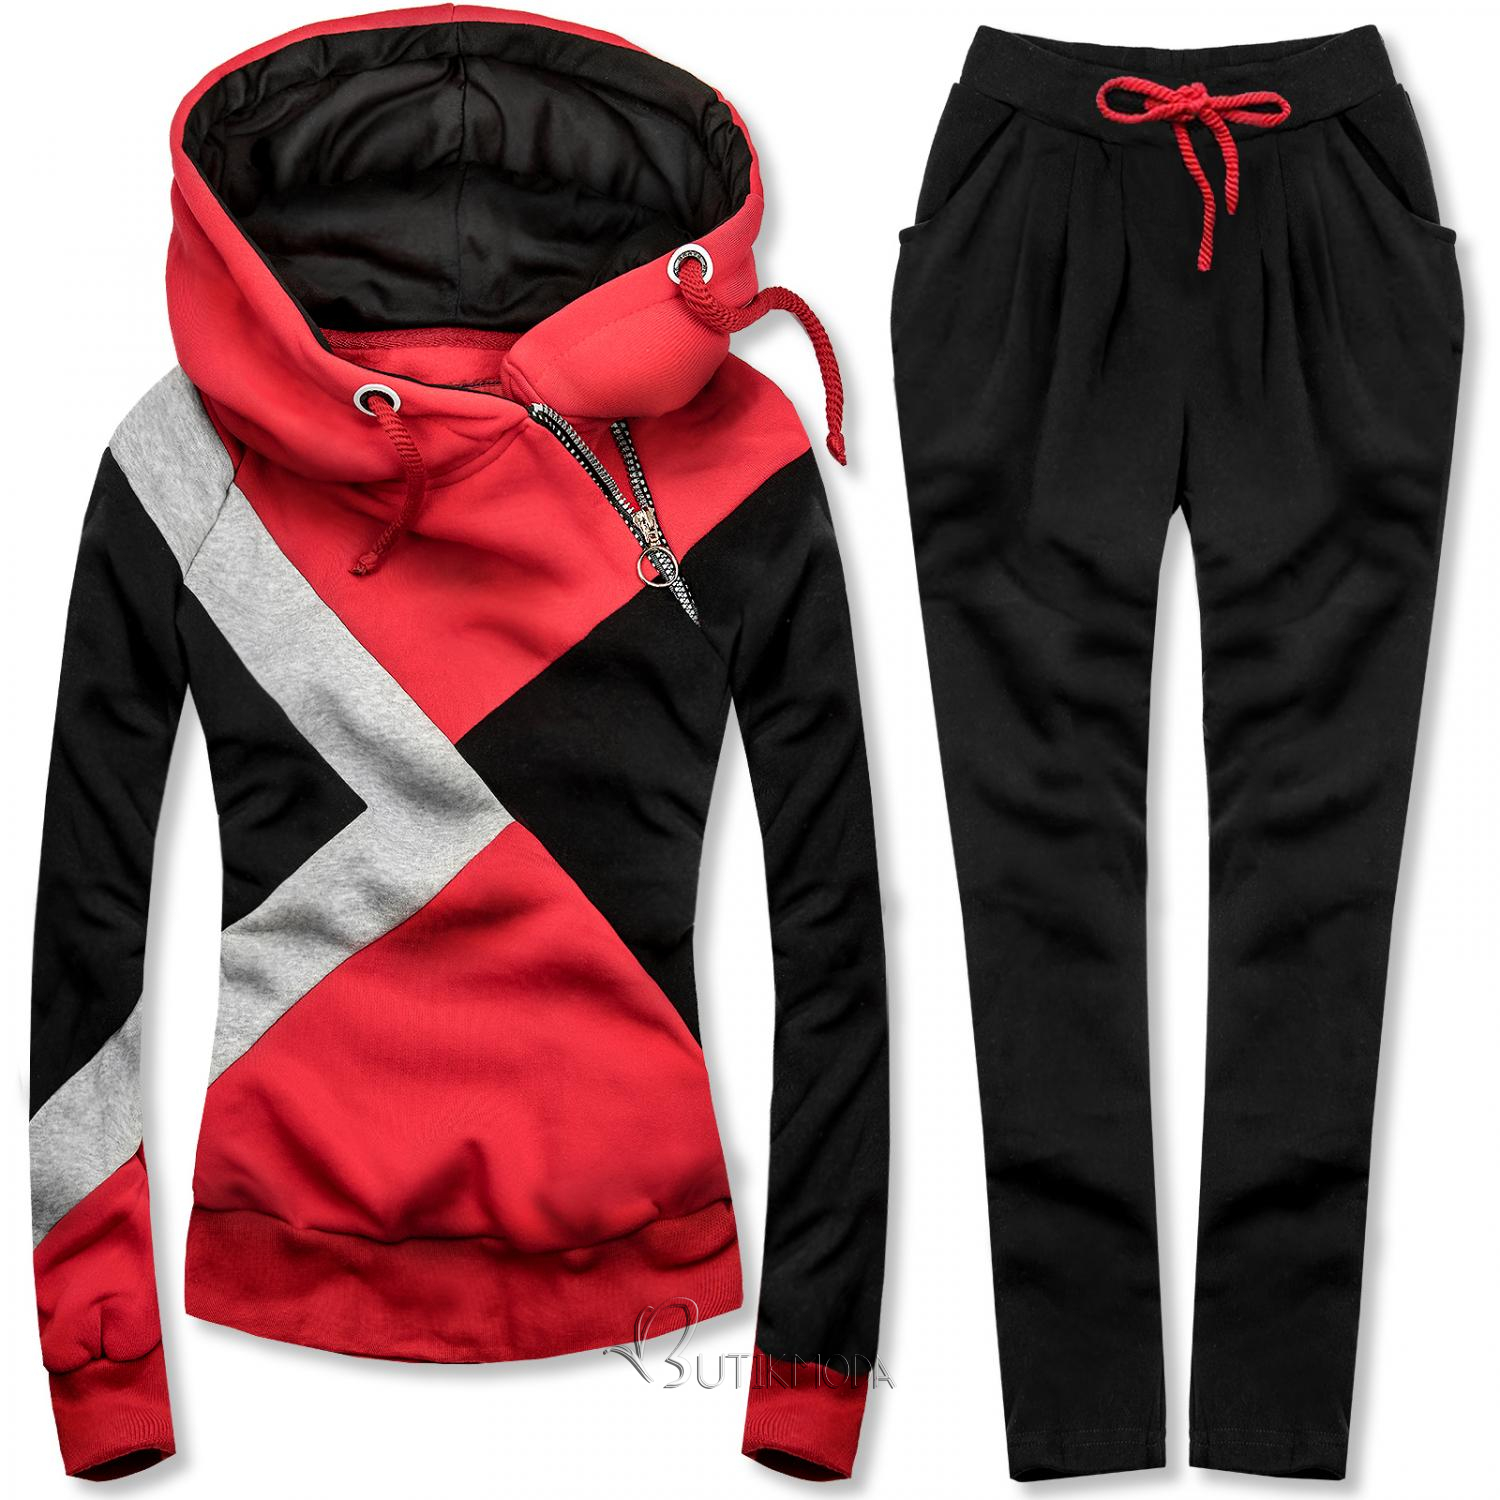 Dreifarbiger Trainingsanzug rot / schwarz / grau